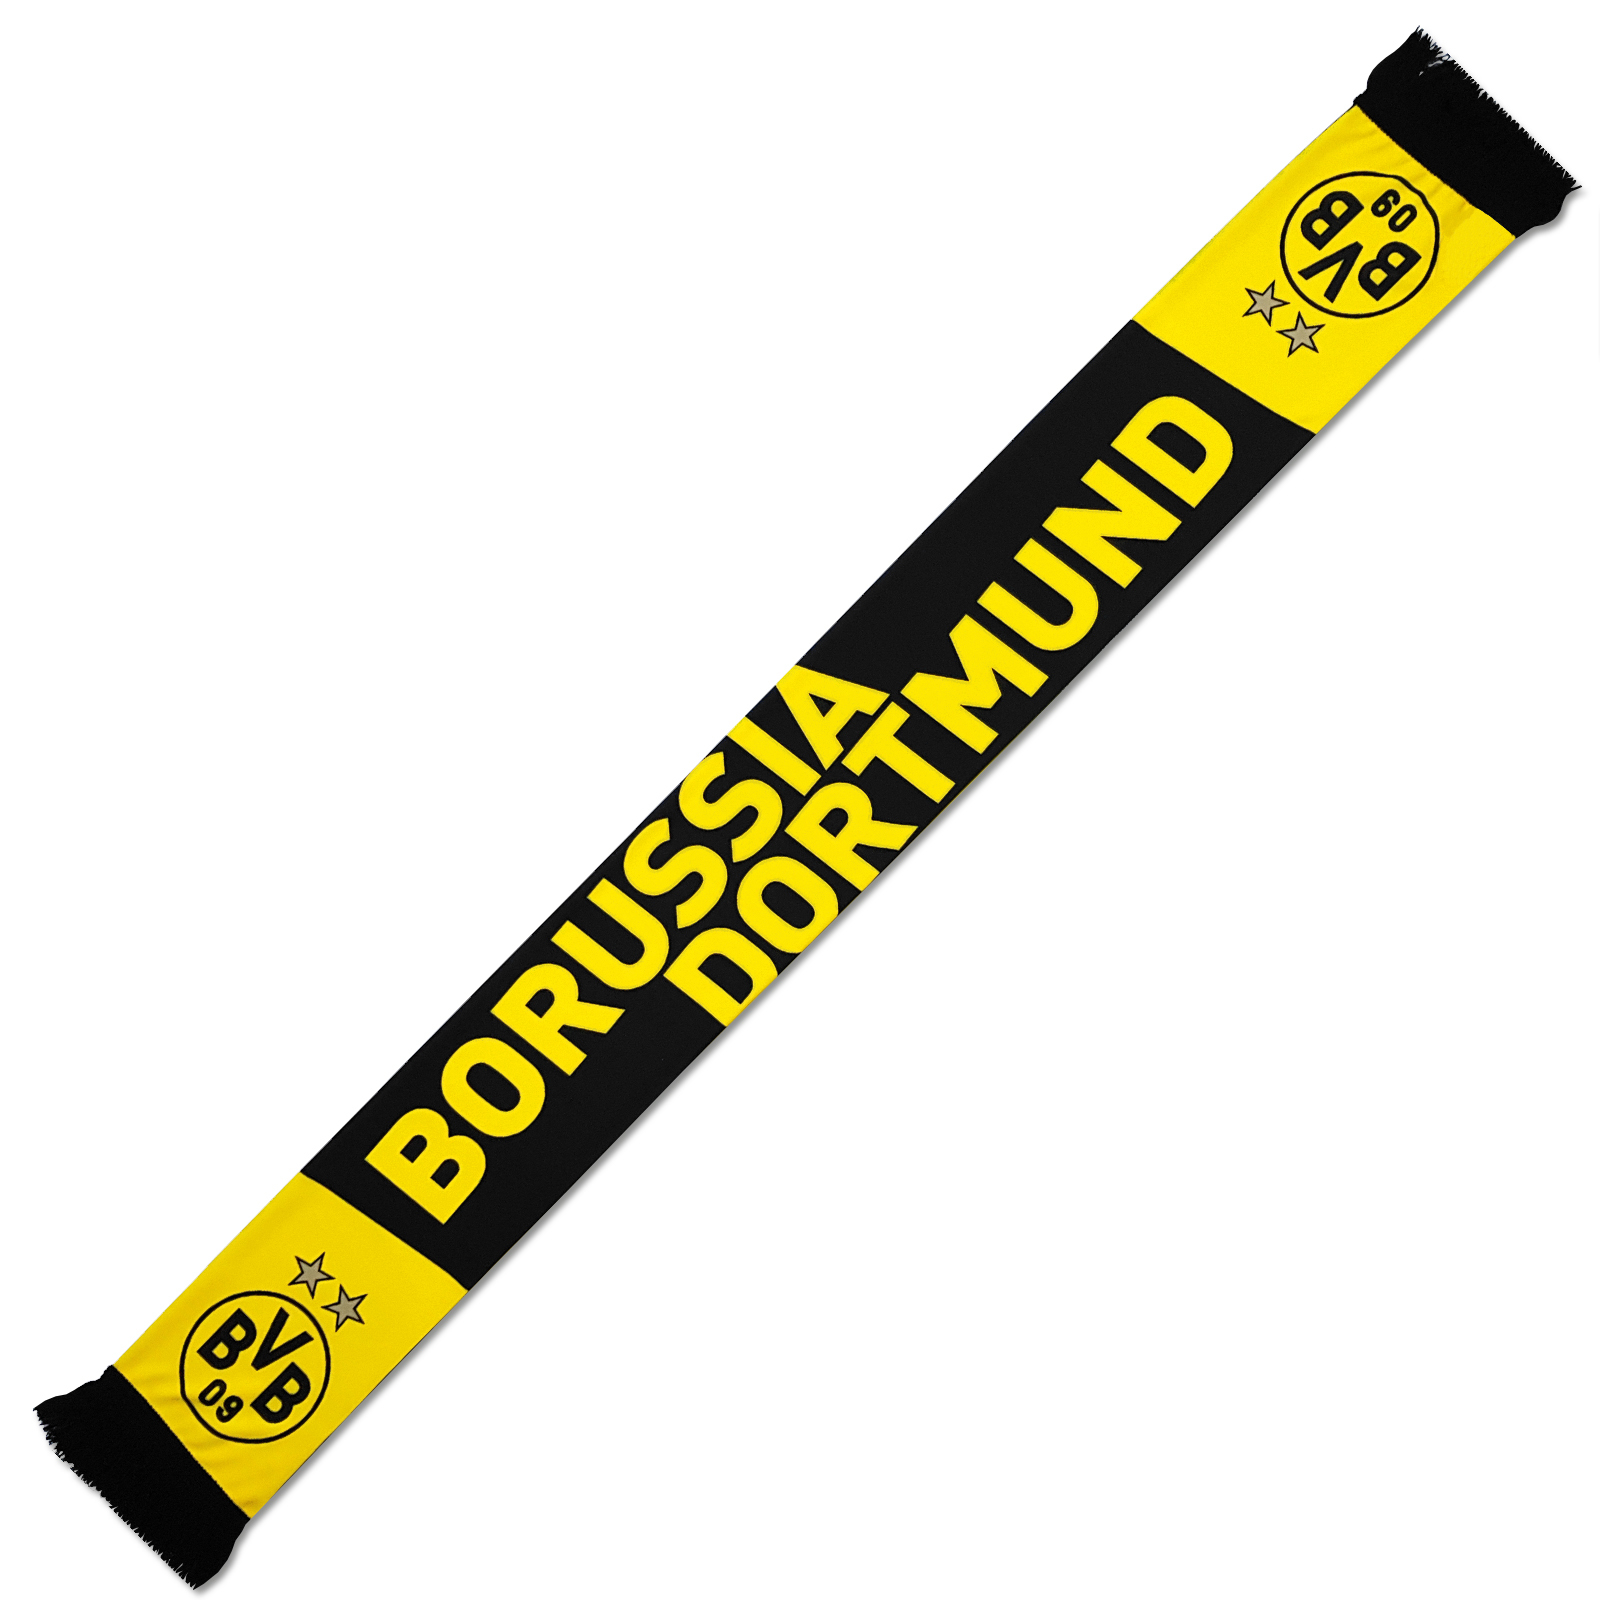 Unser Verein Borussia Dortmund Schal Unsere Stadt Fanschal 